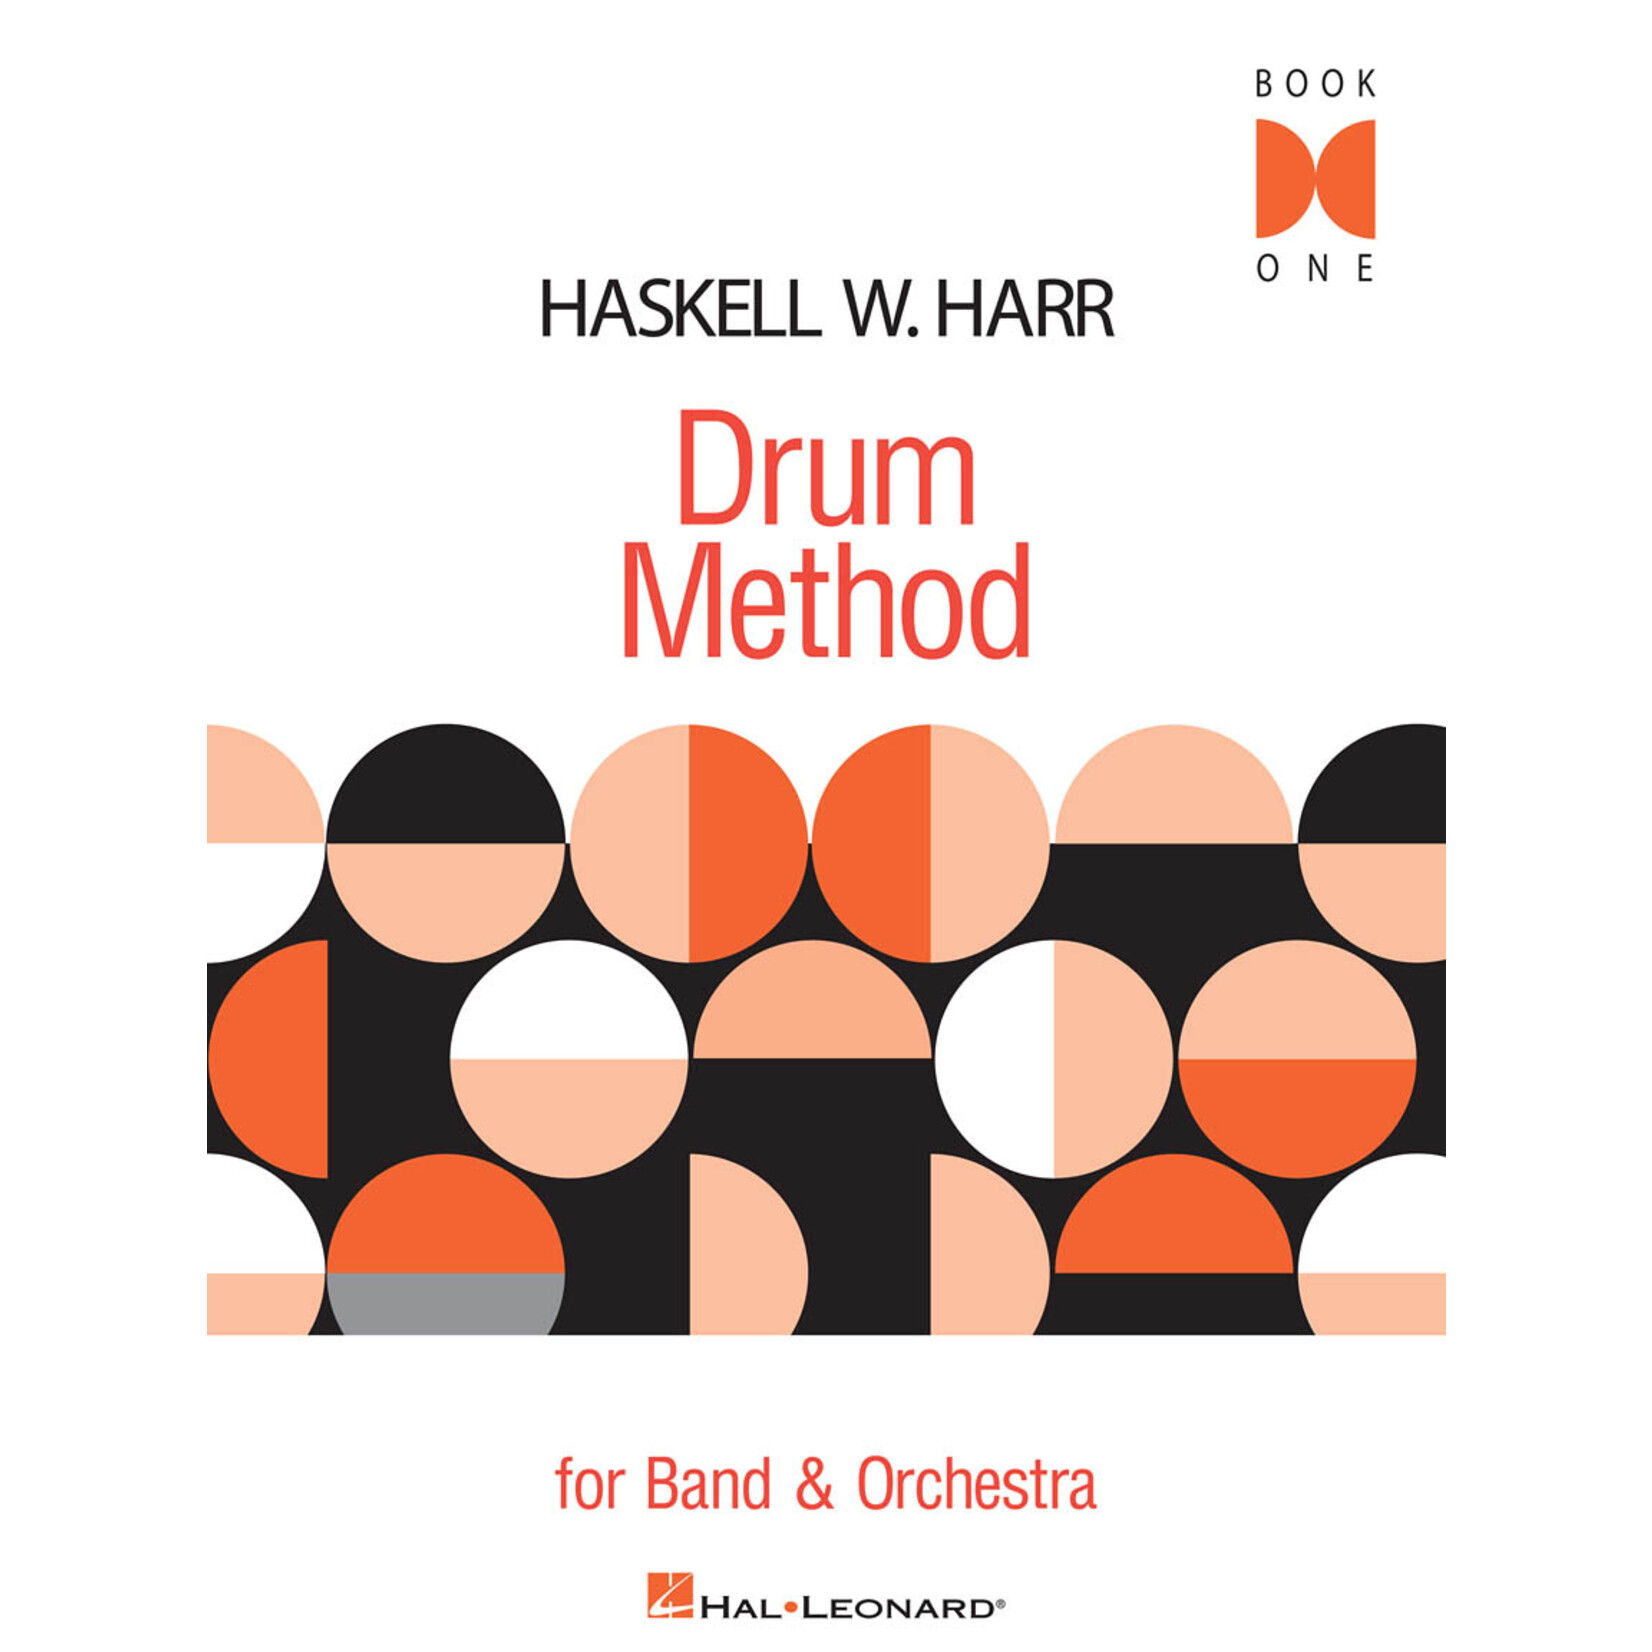 Hal Leonard Haskell W. Harr Drum Method